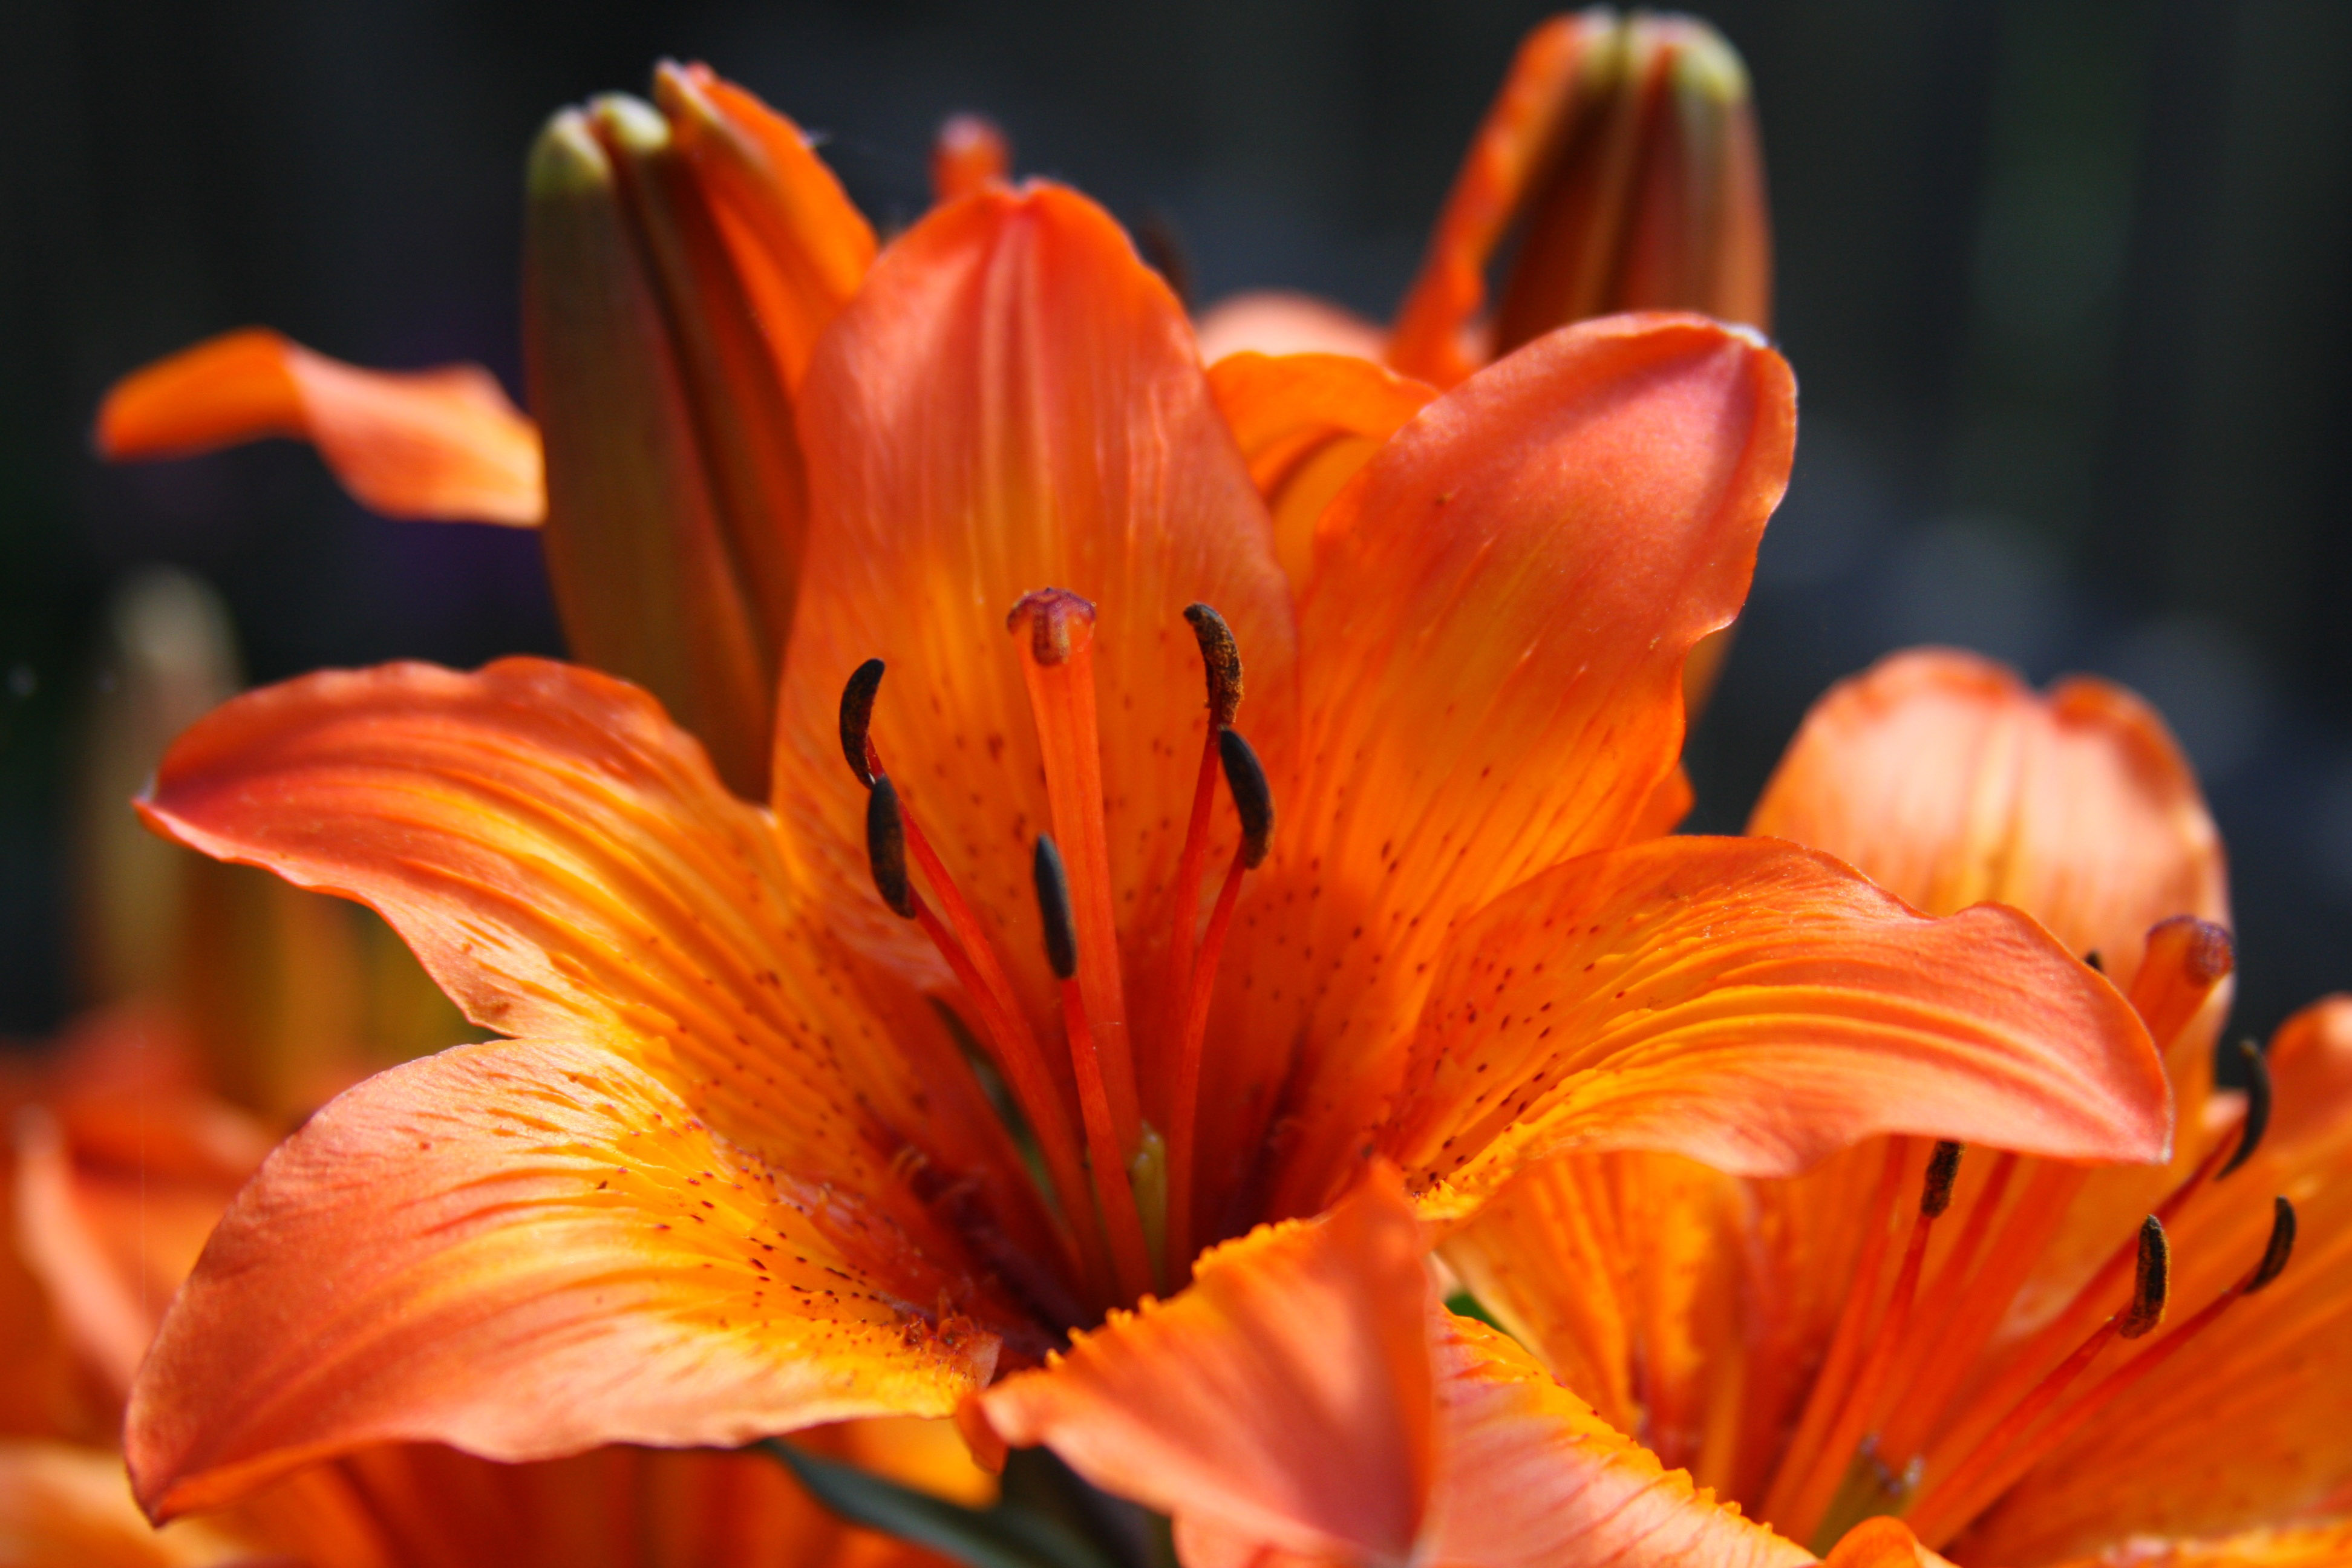 Beautiful orange lily flower image - Free stock photo - Public ...